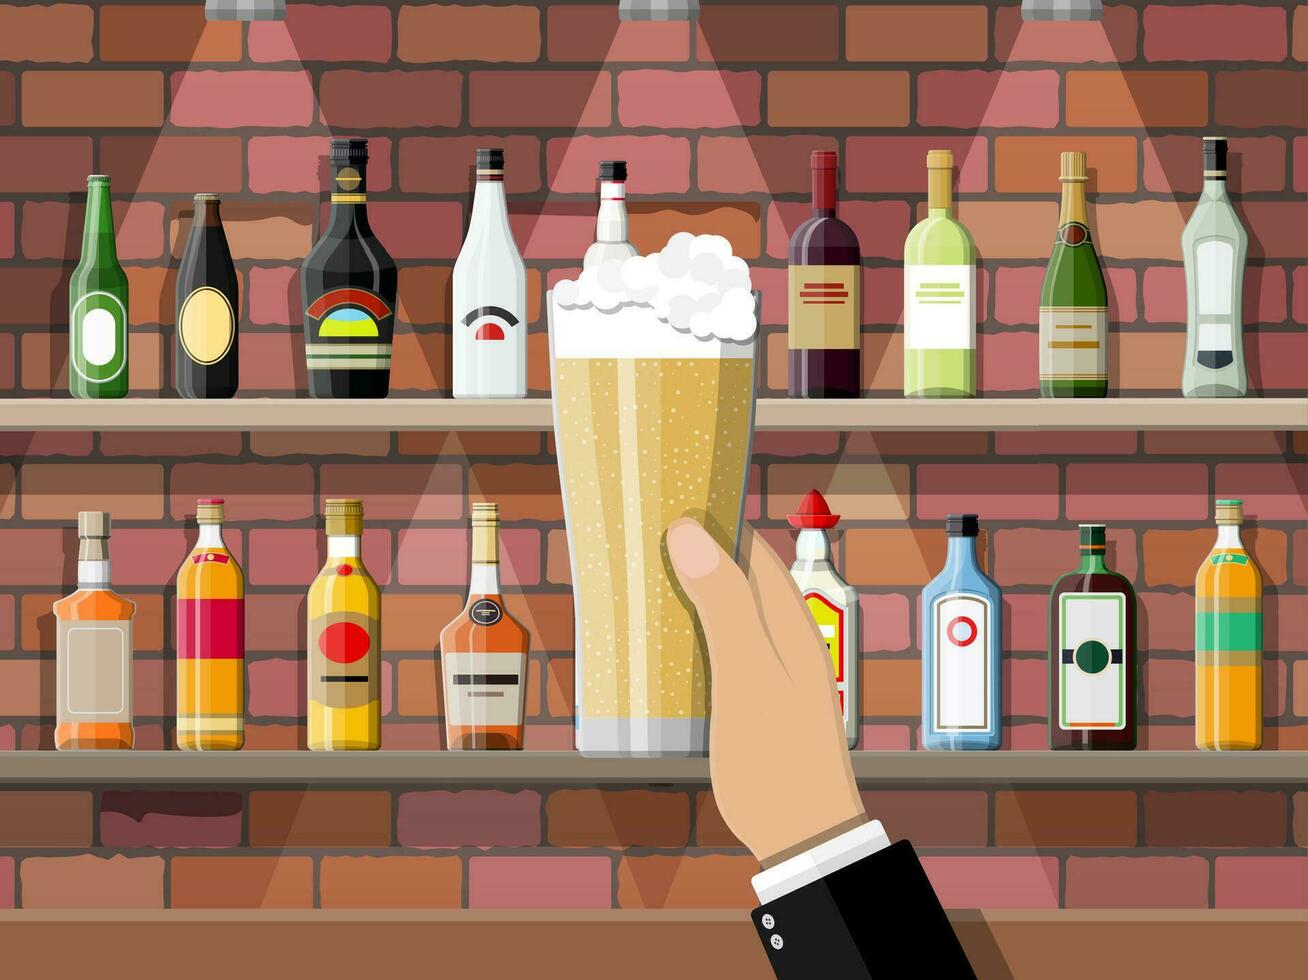 Bebiendo establecimiento. mano con vaso de cerveza. interior de pub, café o bar. bar encimera, estantería con alcohol botellas lentes y lámpara. vector ilustración en plano estilo.